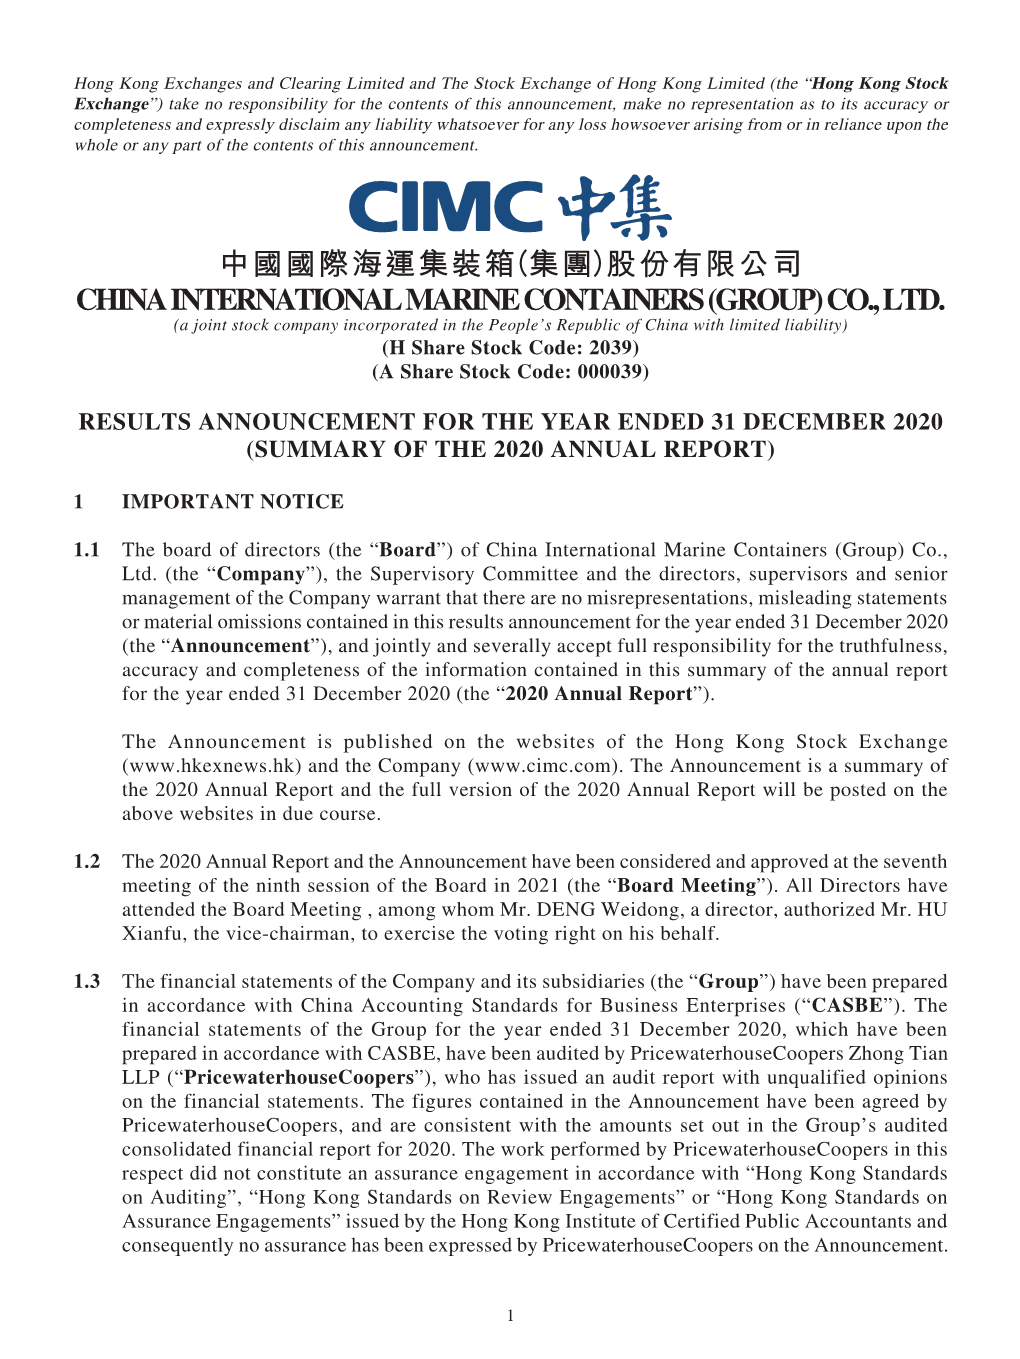 中國國際海運集裝箱（集團）股份有限公司 China International Marine Containers (Group) Co., Ltd